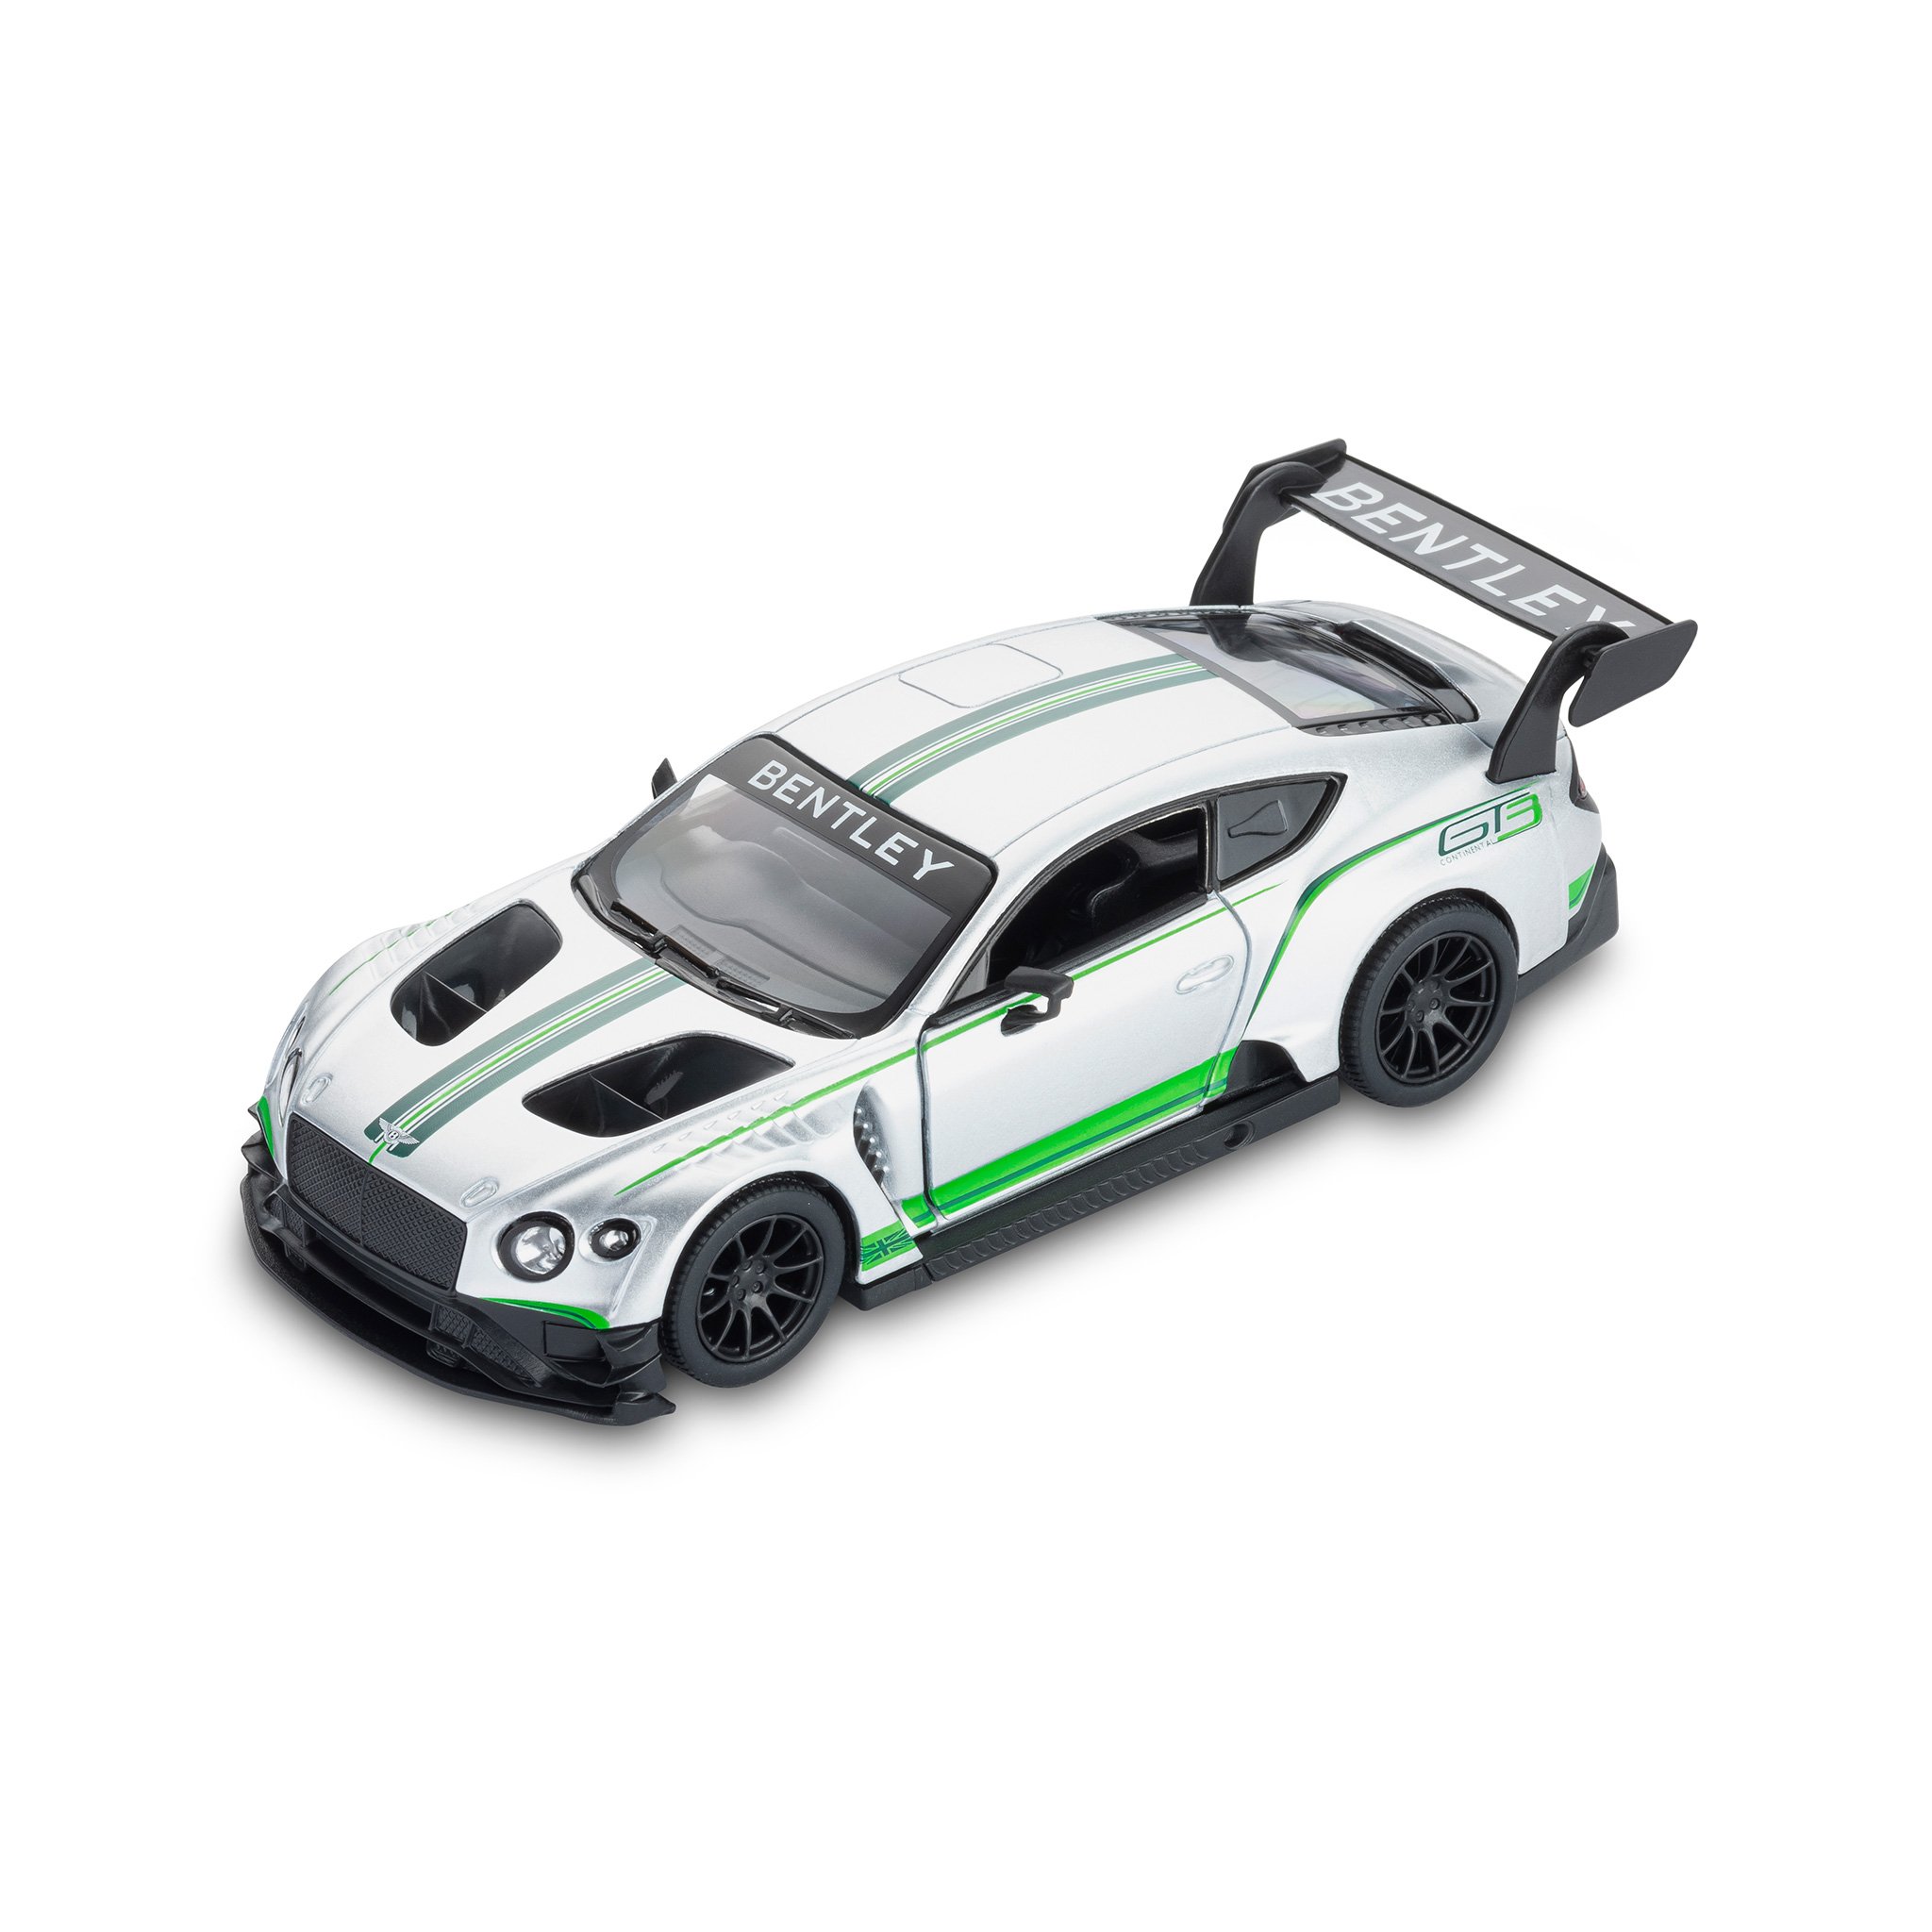 賓利 Continental GT3 玩具跑車 (白色)